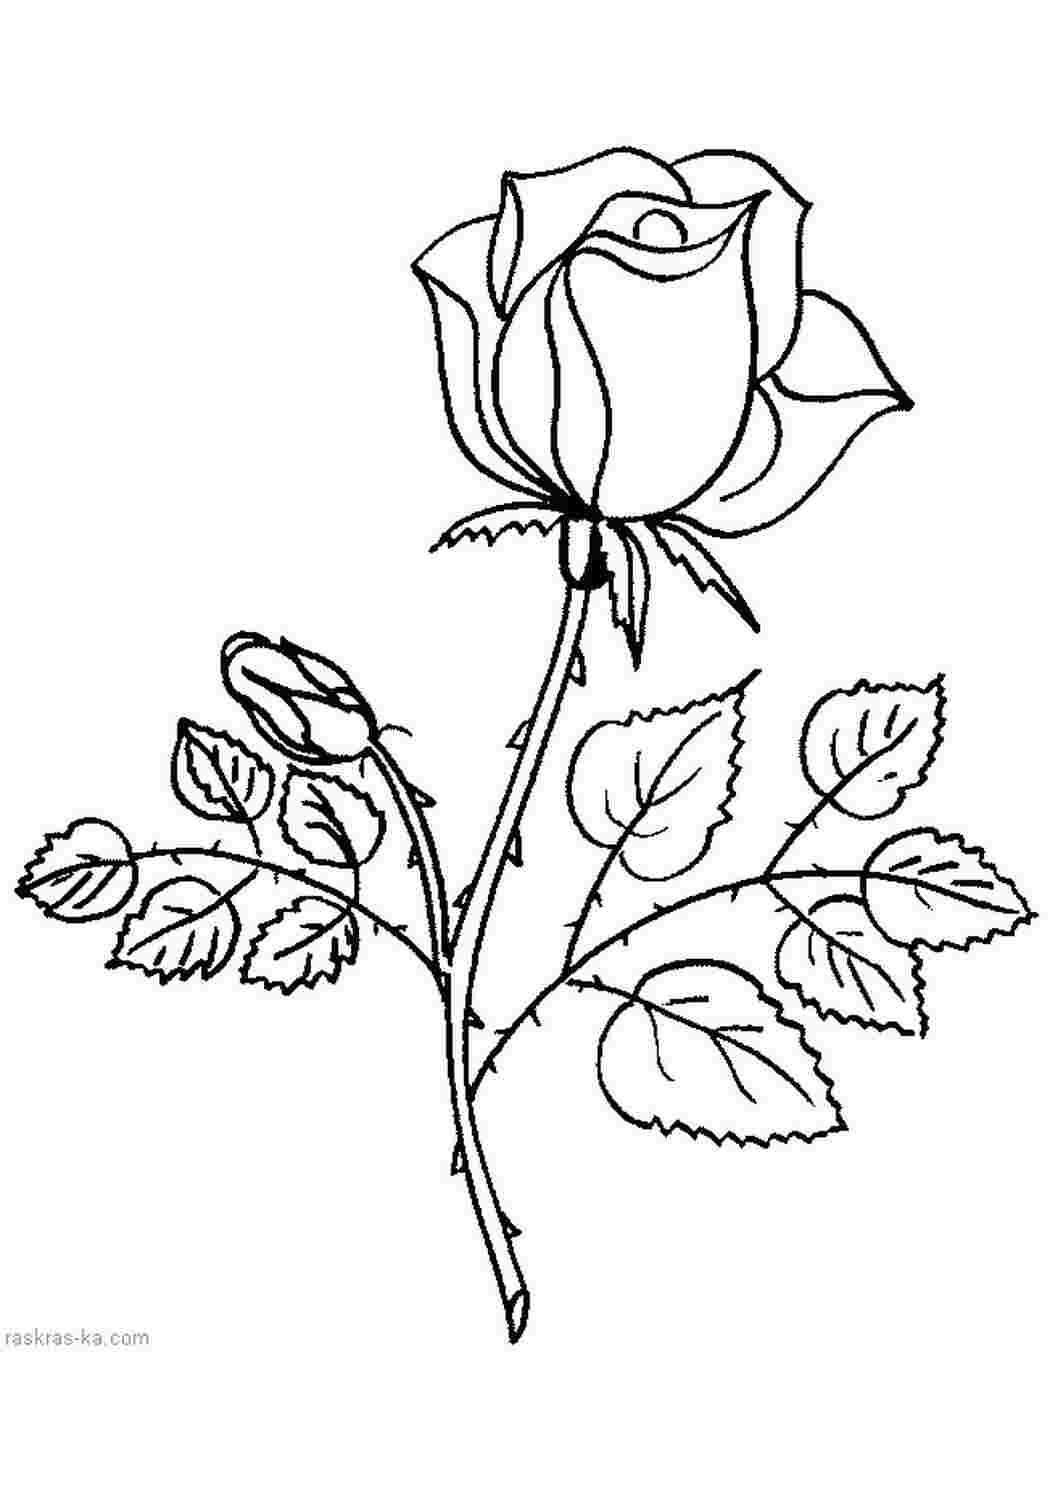 Раскраски раскраска роза,раскраска цветы,картинки розы Раскраски Девочкам 